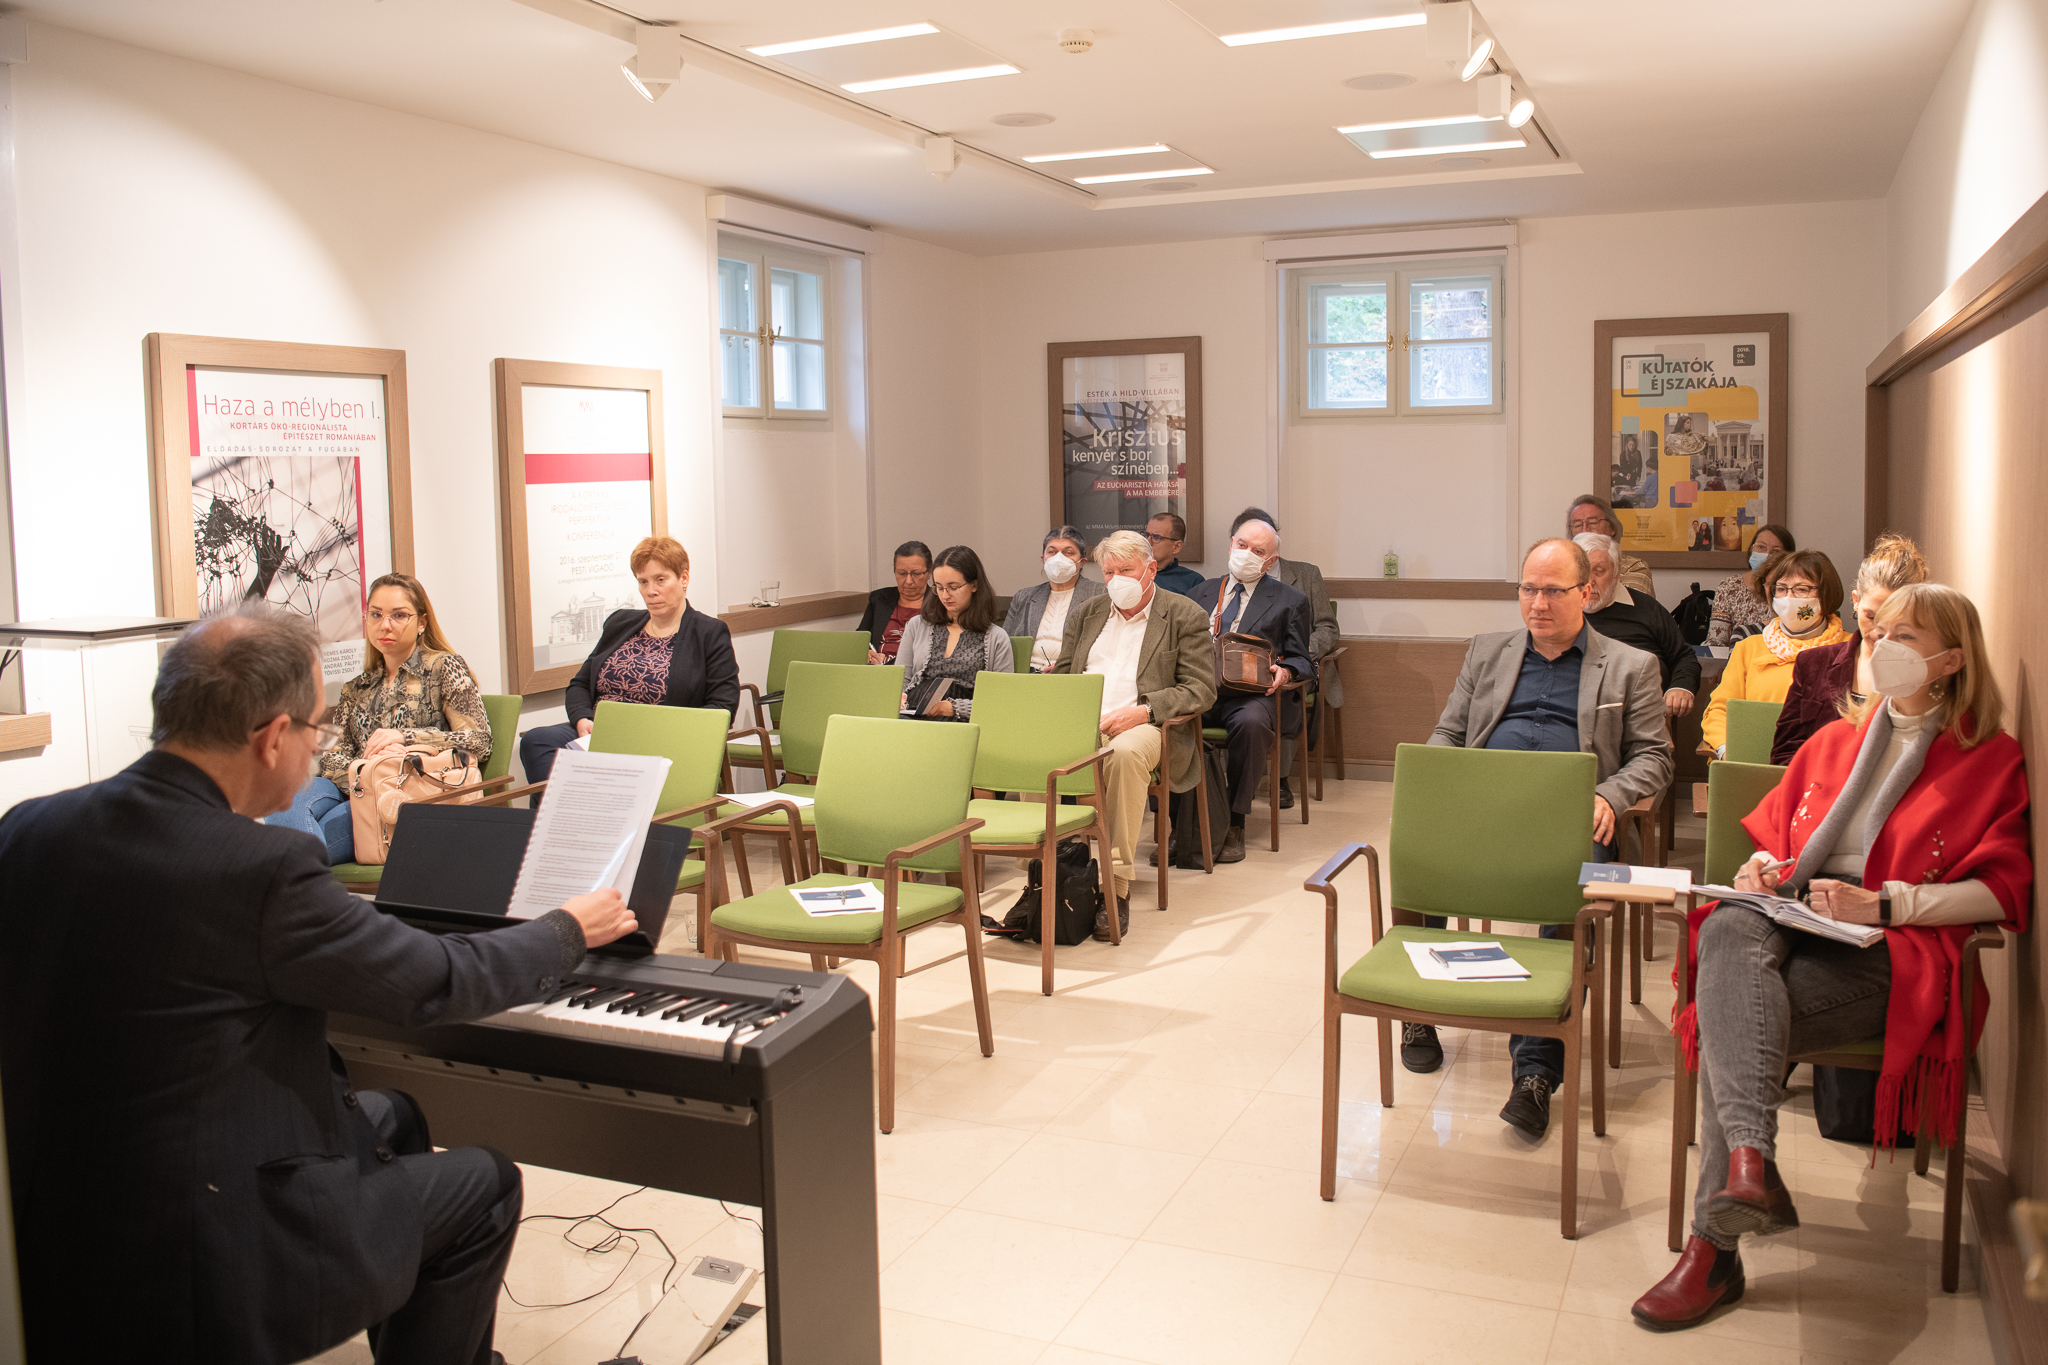 Zeneelméleti műhelytalálkozó-sorozat indult a Hild-villában